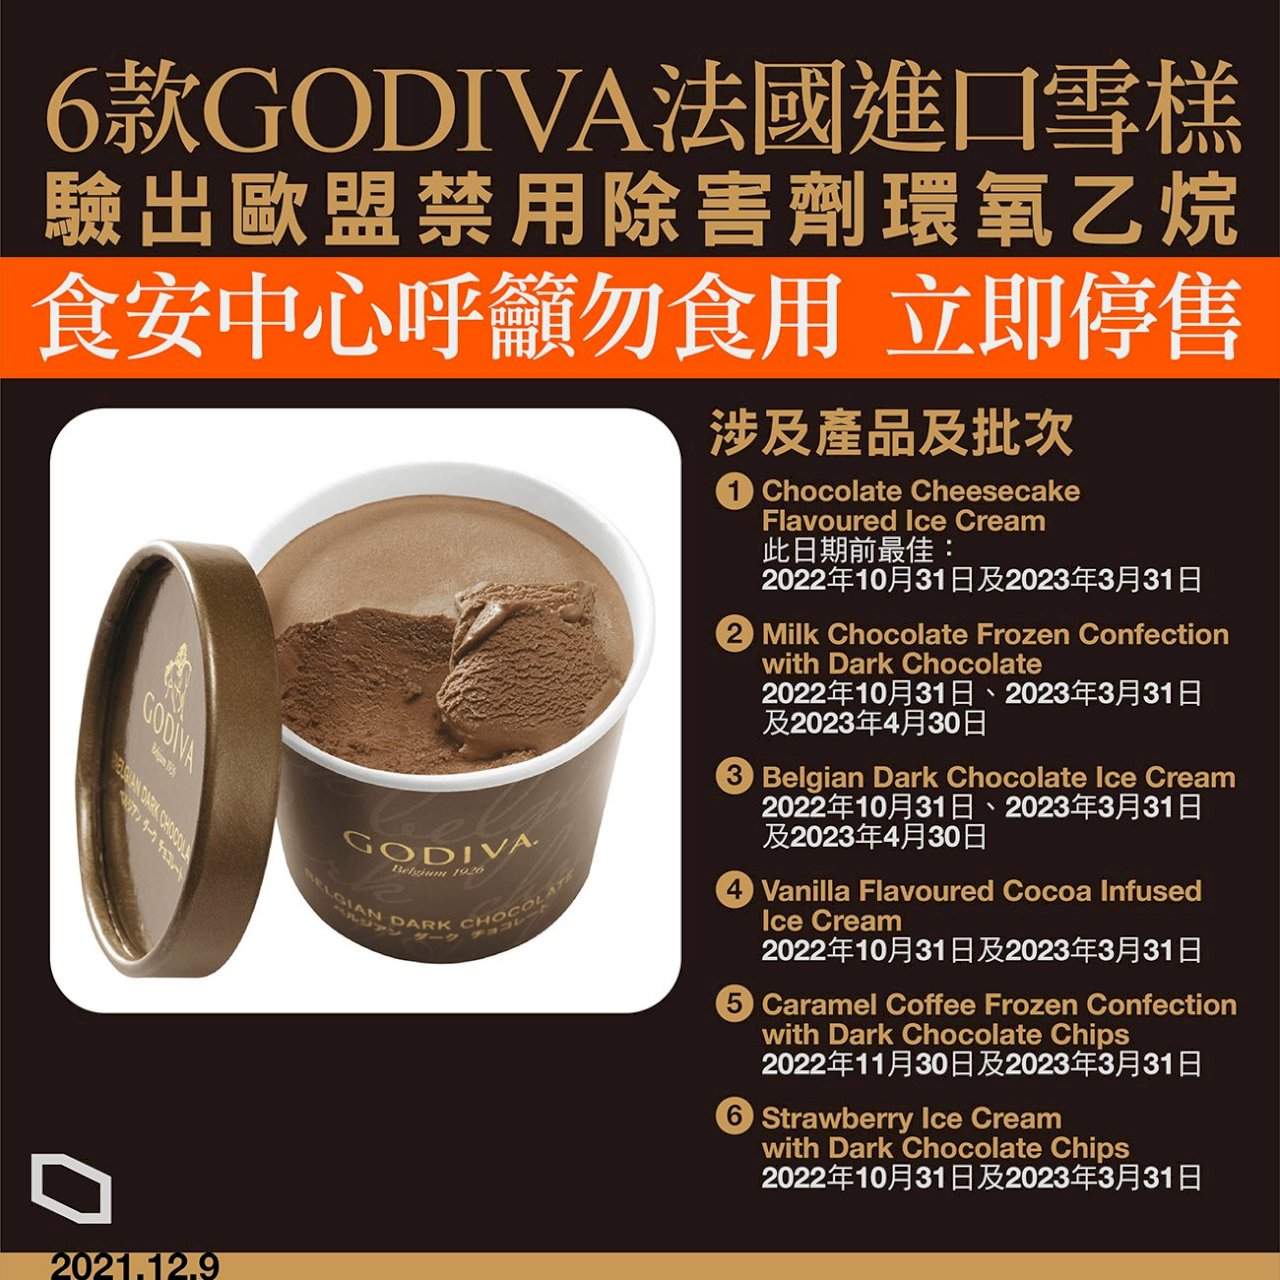 6款Godiva冰淇淋含禁用除害劑  港食安中心籲勿食用